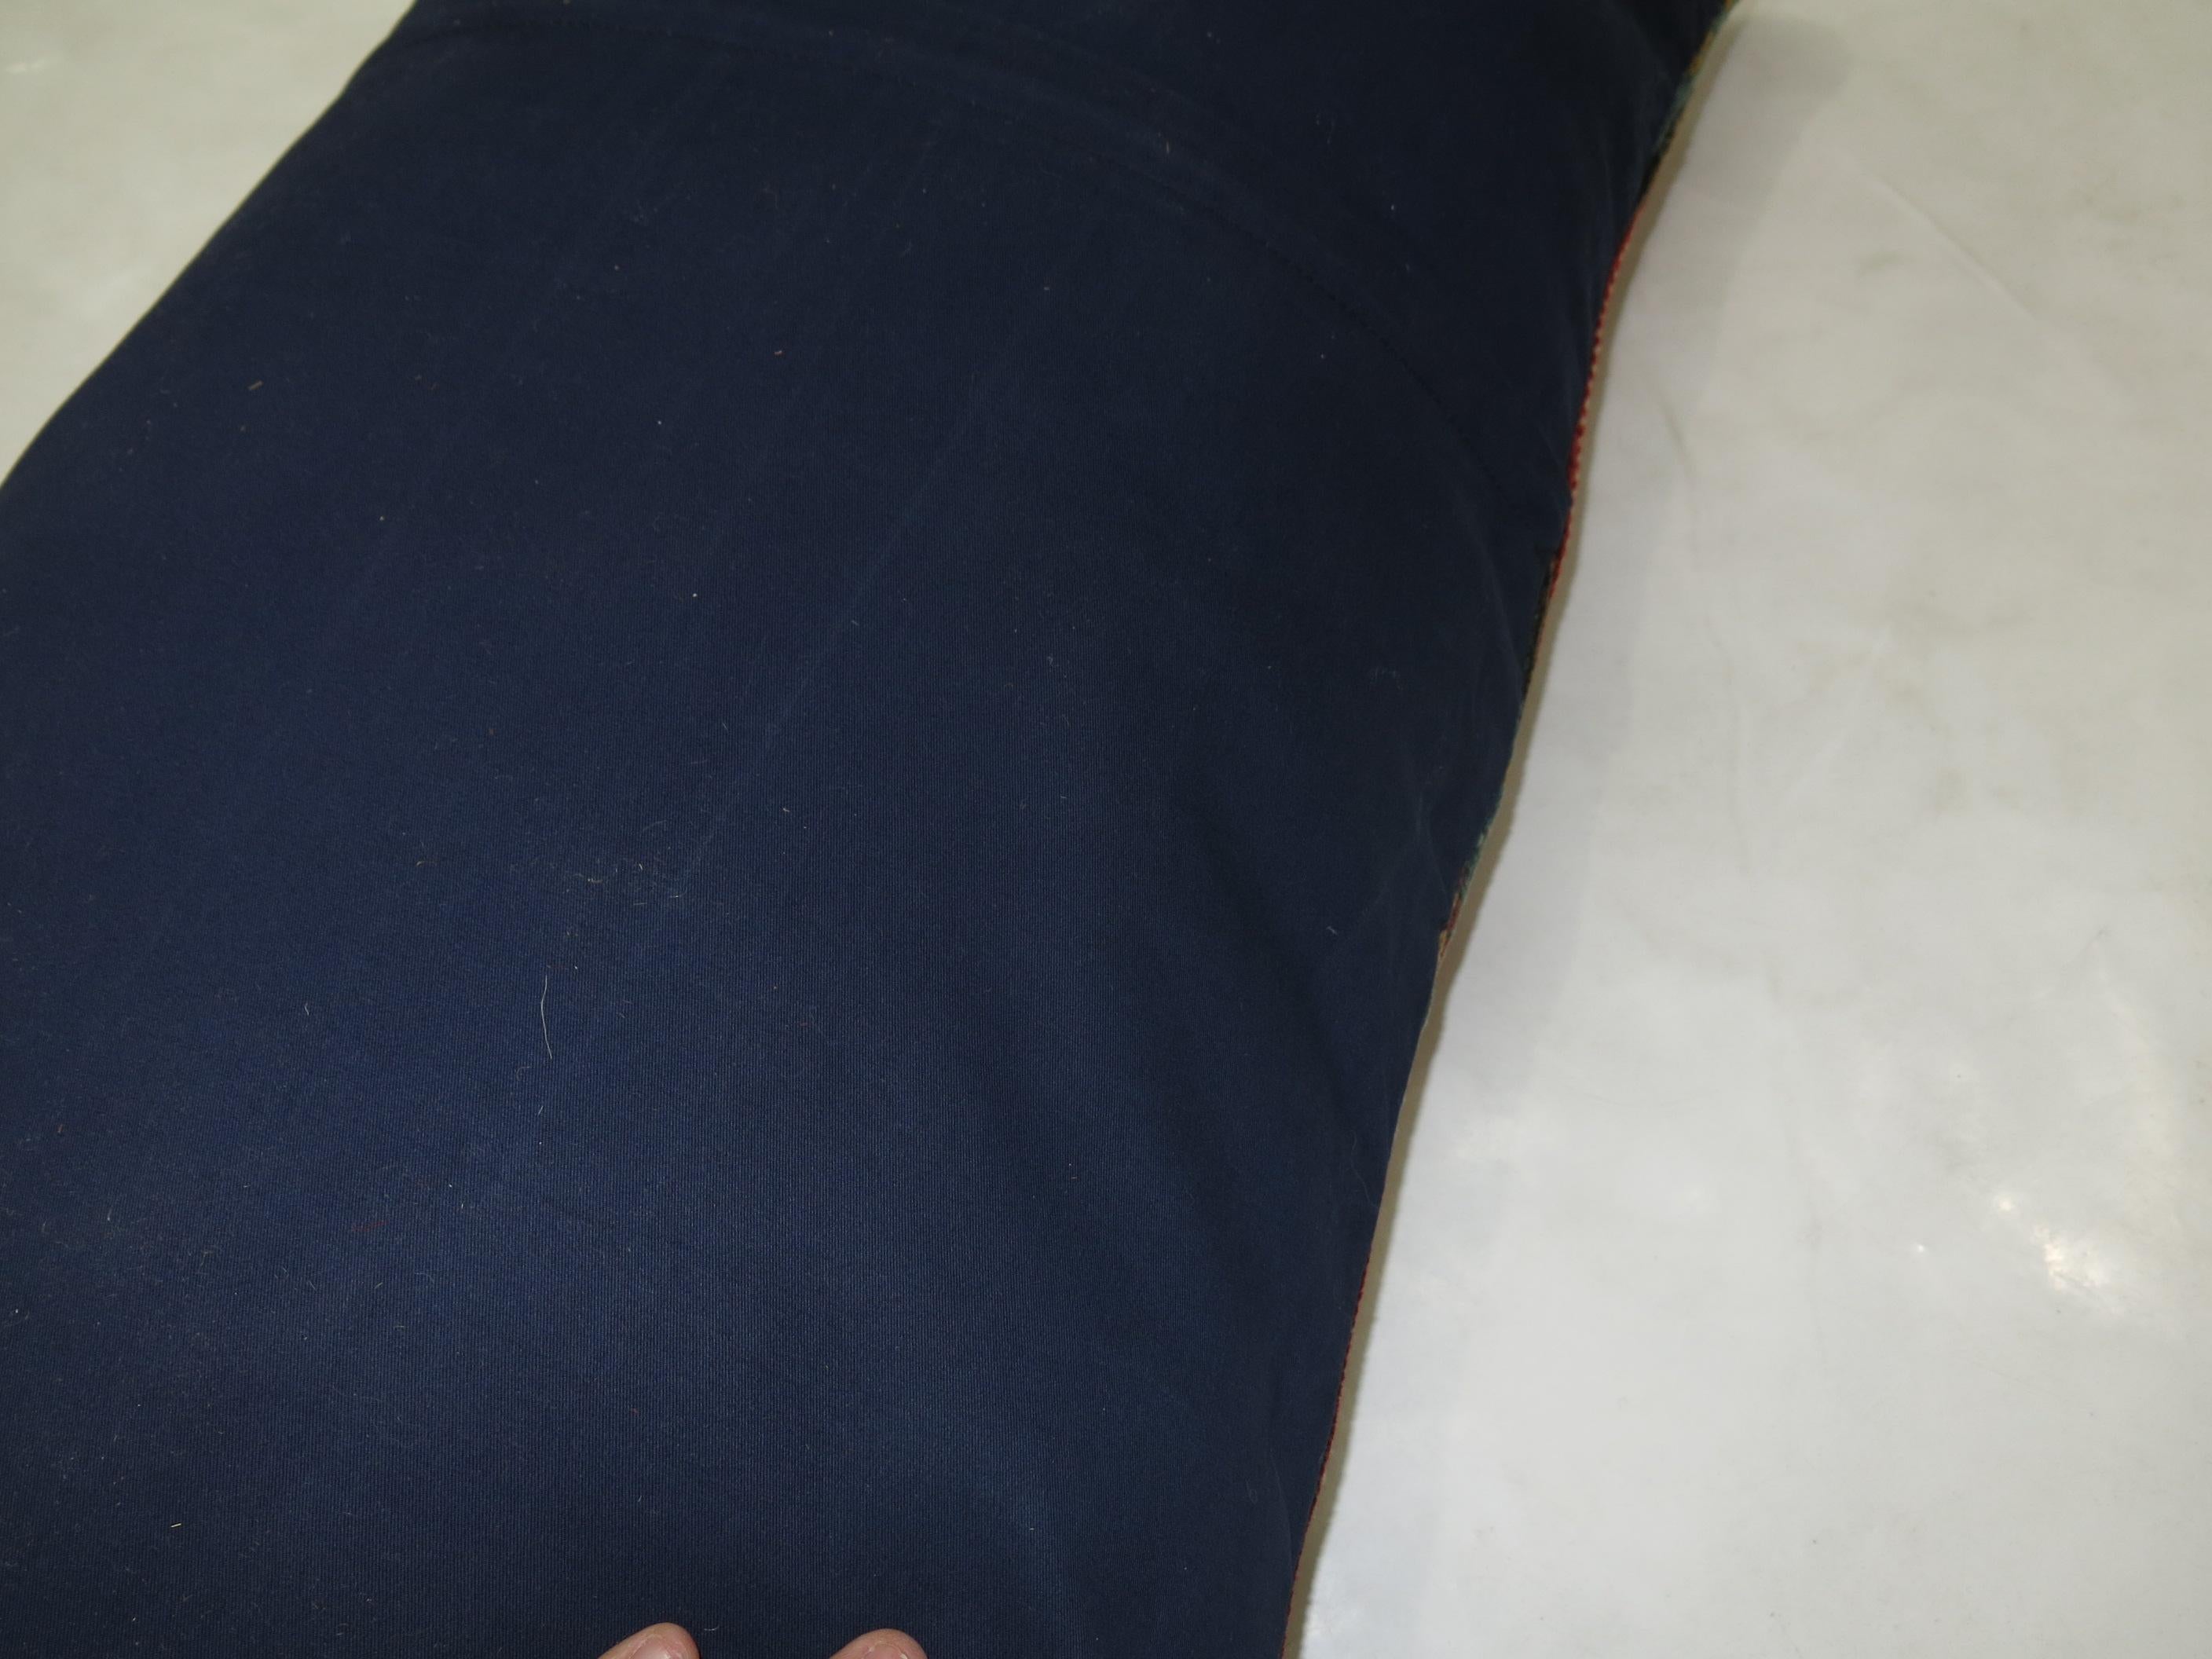 Das Kissen ist aus einem kaukasischen Karabagh-Teppich gefertigt.

Maße: 17'' x 18''.